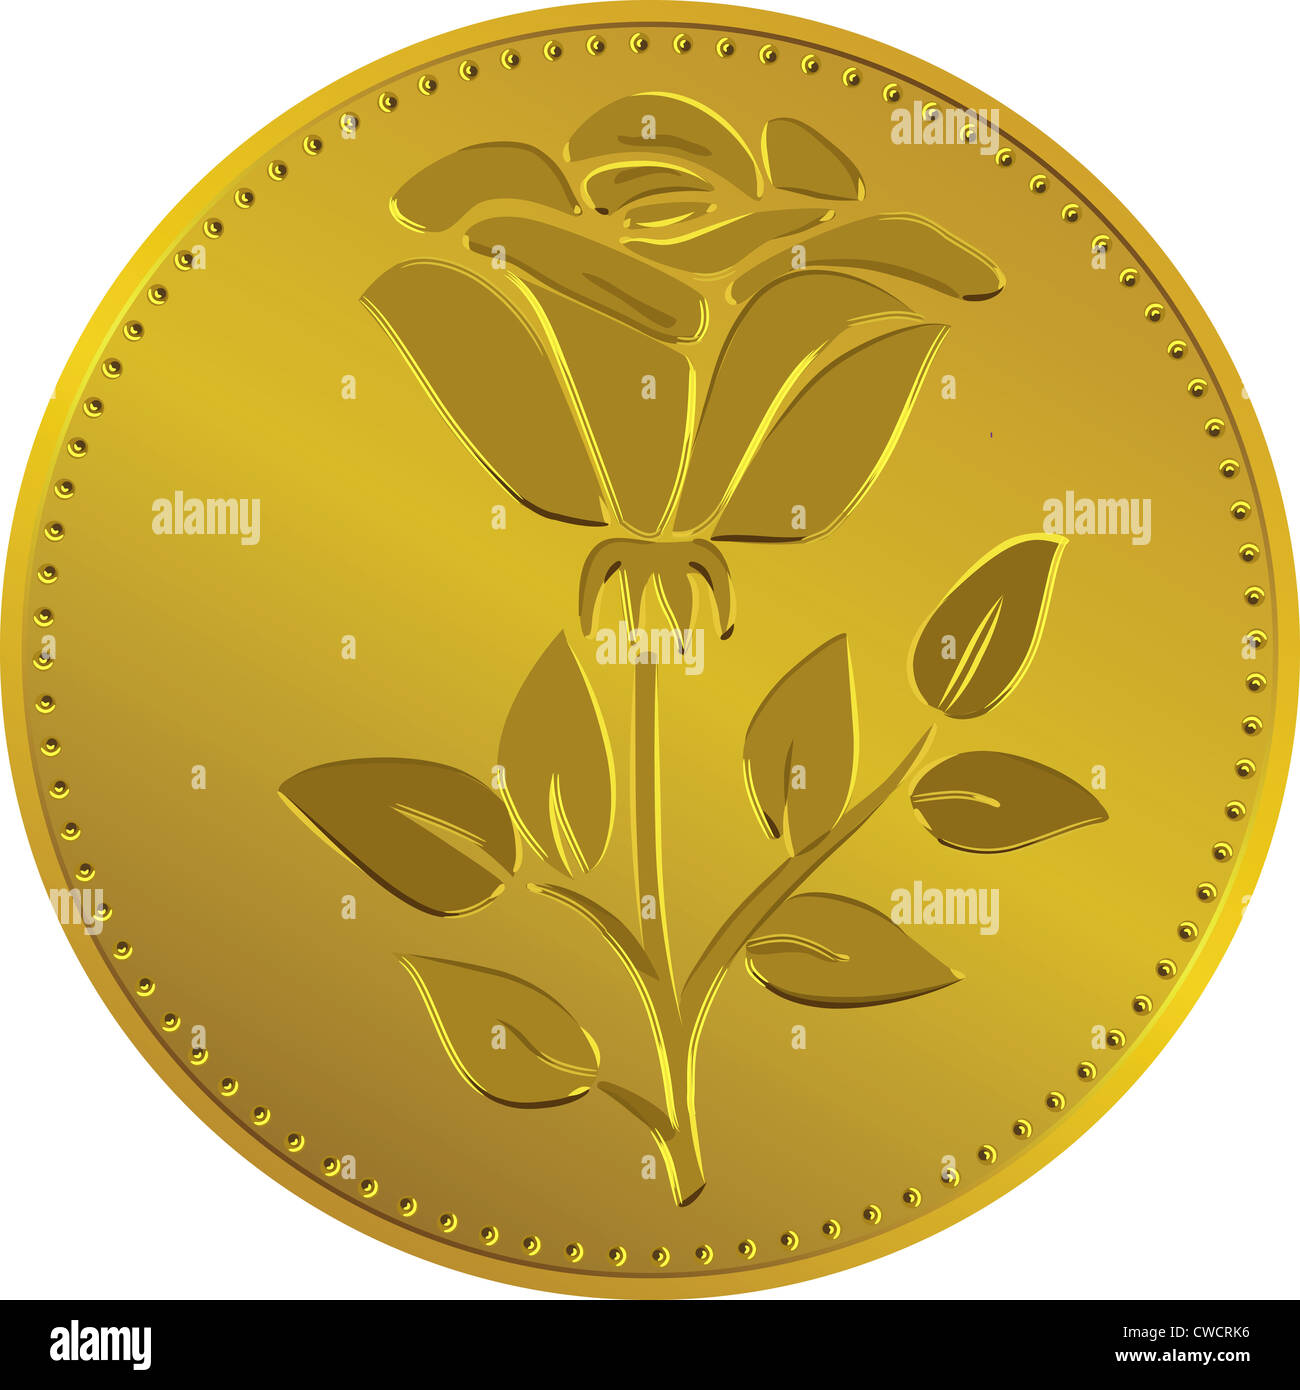 La moneda británica moneda de oro con la imagen dela flor rosa (Rosa Tudor  - el emblema de Inglaterra Fotografía de stock - Alamy